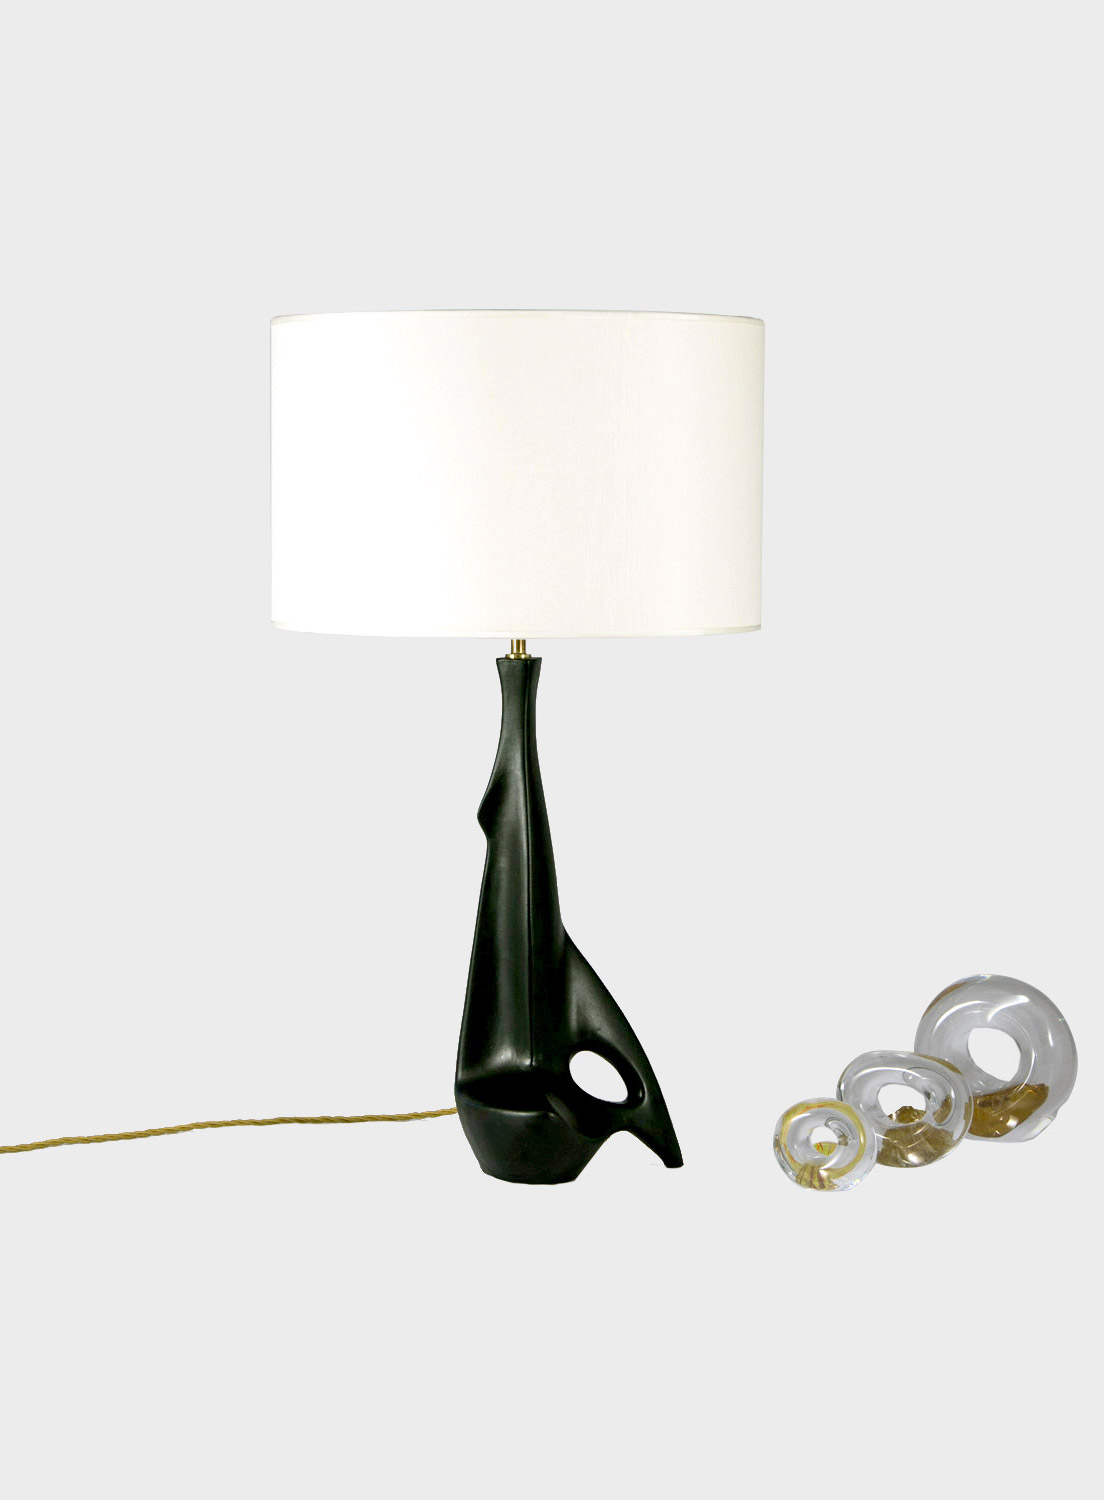 The Pulcinella Table Lamp by Silvano Pulcinella for…